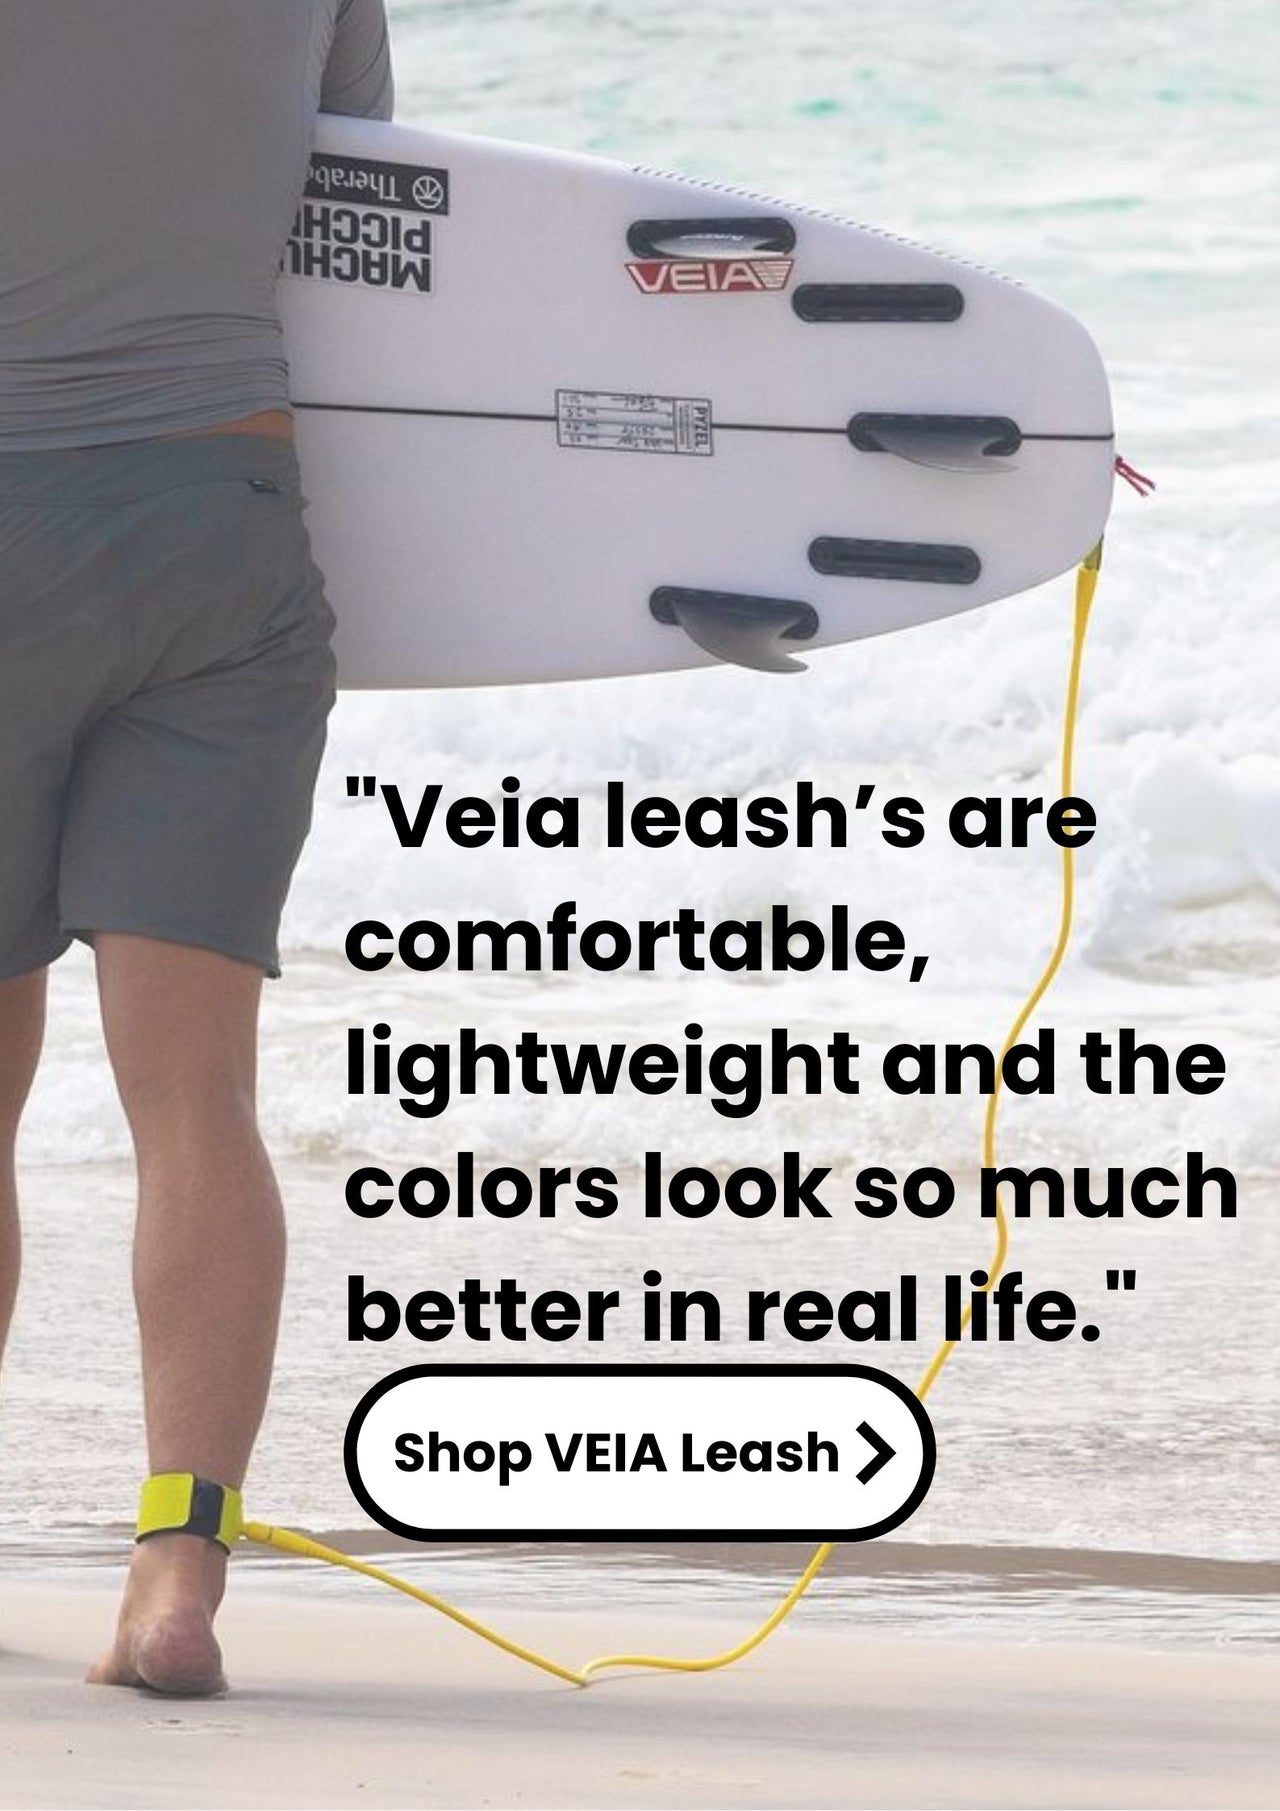 Veia leash hp portrait ad like 2